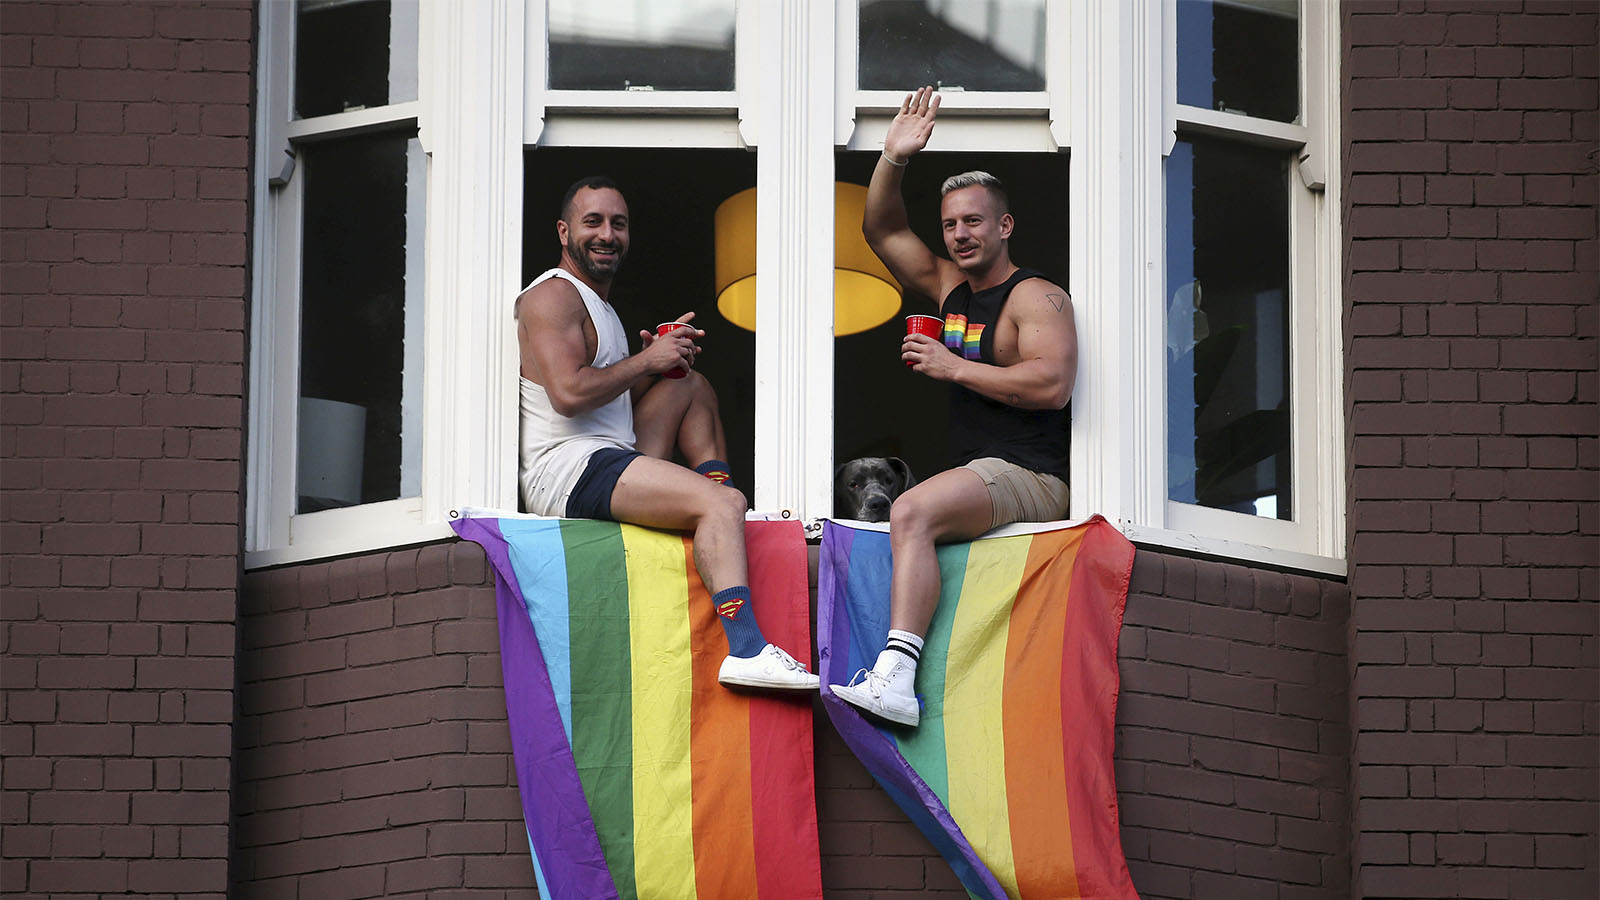 זוג צופה במצעד לציון תוצאות משאל עם לאישור נישואים חד מיניים באוסטרליה (AP Photo/Rick Rycroft)